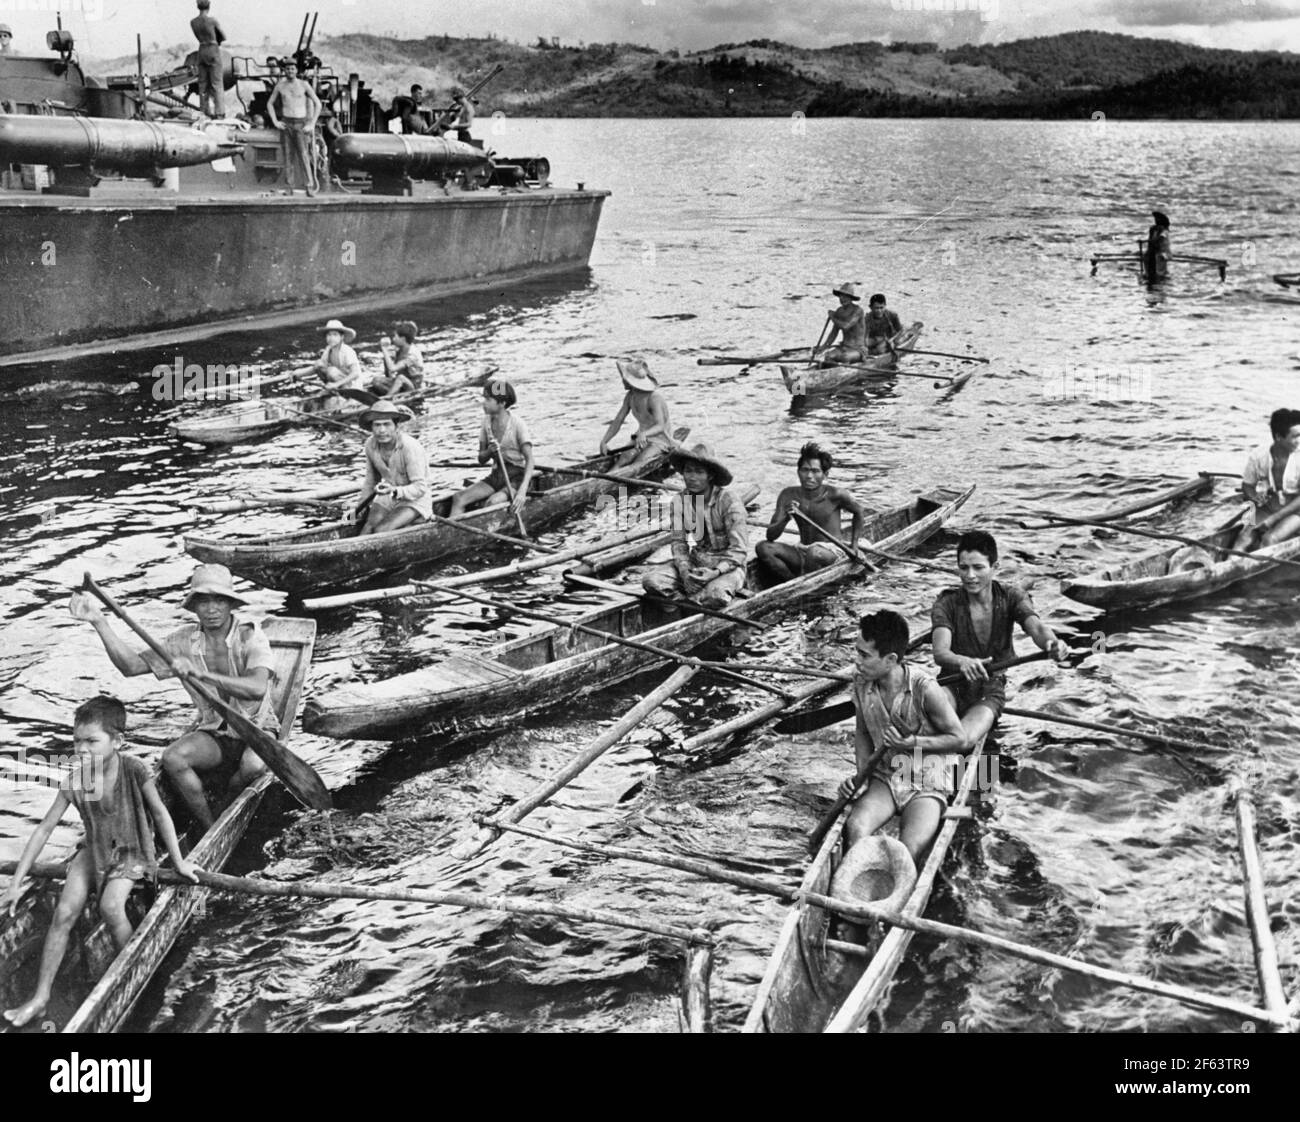 Schlacht von Surigao Strait - Rettungseinsätze in der Surigao Strait, Philippinen, auf der Suche nach japanischen Überlebenden, Oktober 1944 Stockfoto